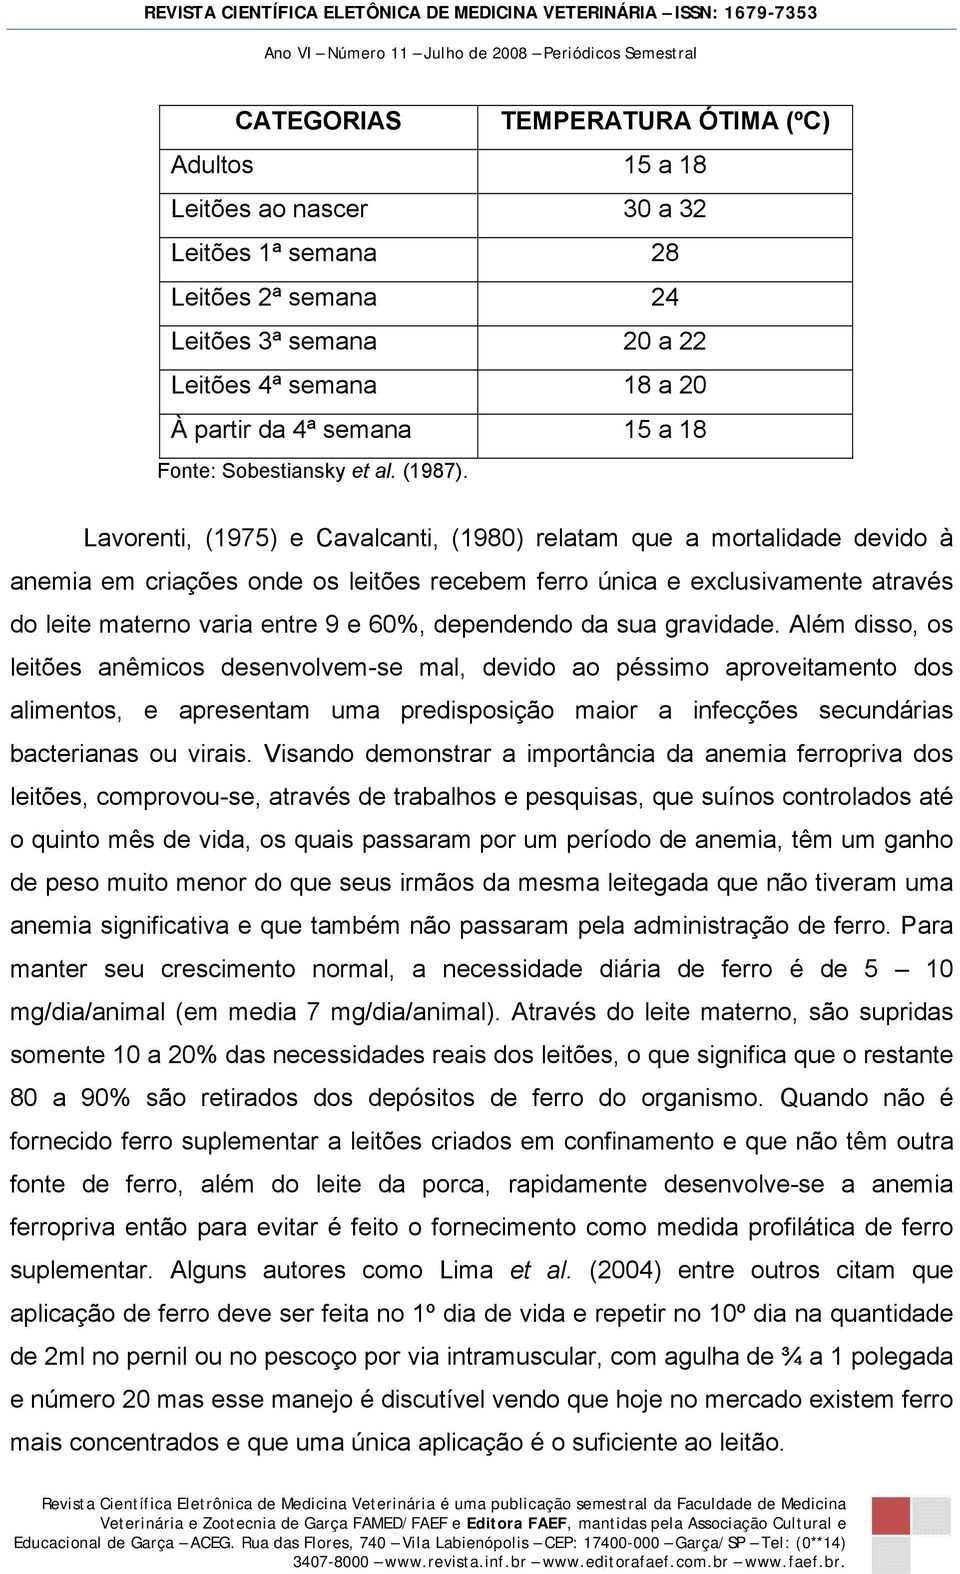 Lavorenti, (1975) e Cavalcanti, (1980) relatam que a mortalidade devido à anemia em criações onde os leitões recebem ferro única e exclusivamente através do leite materno varia entre 9 e 60%,